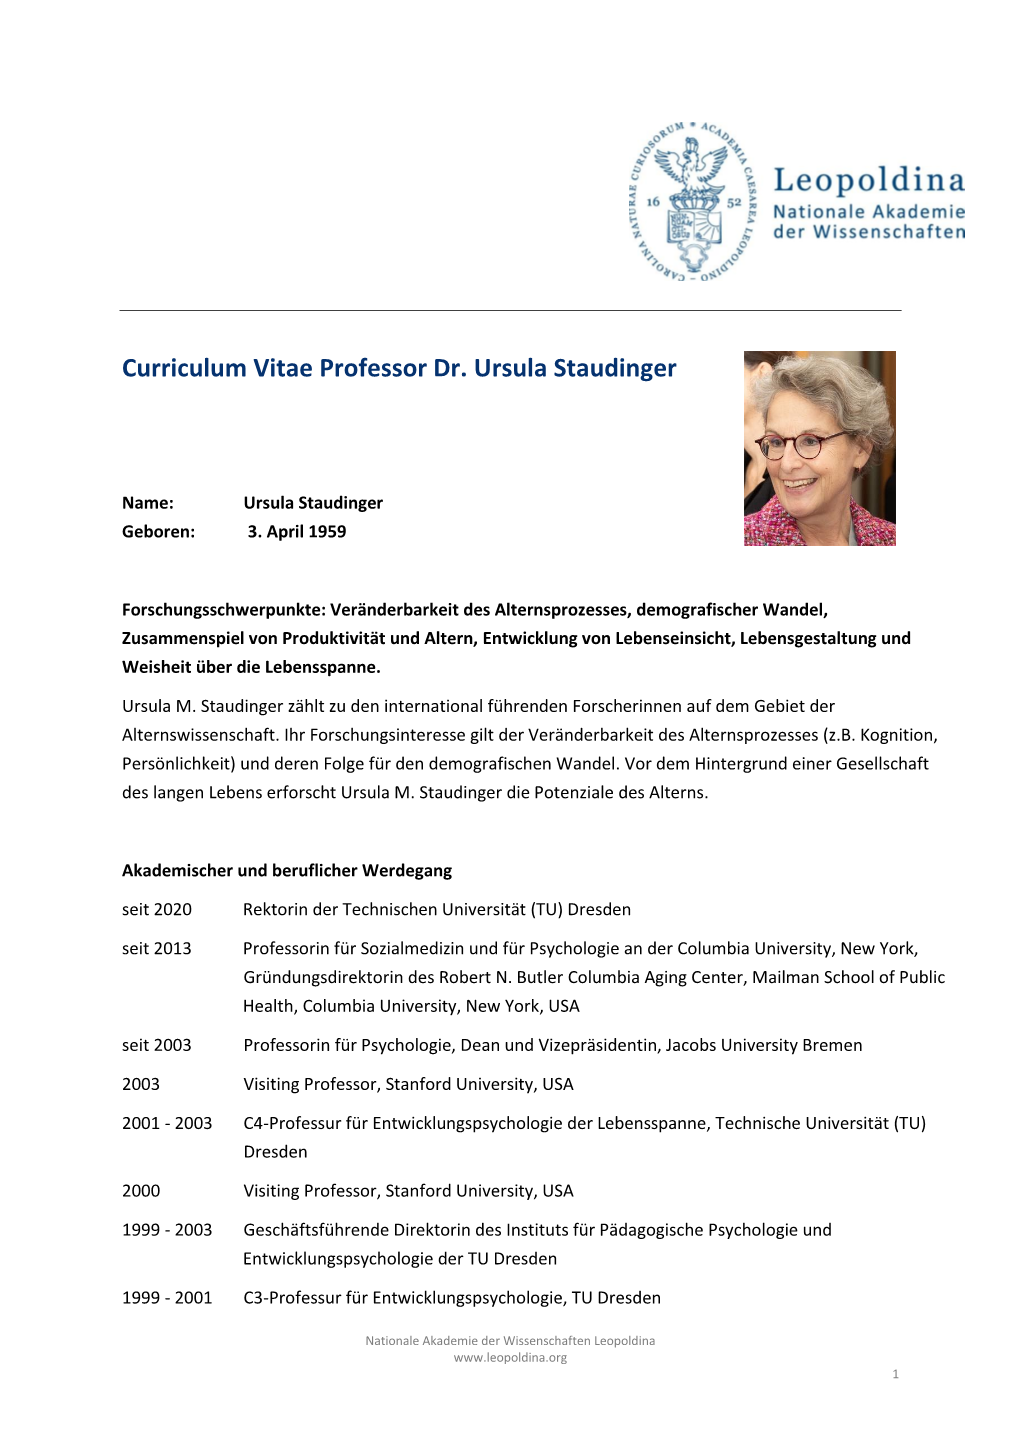 CV Ursula Staudinger